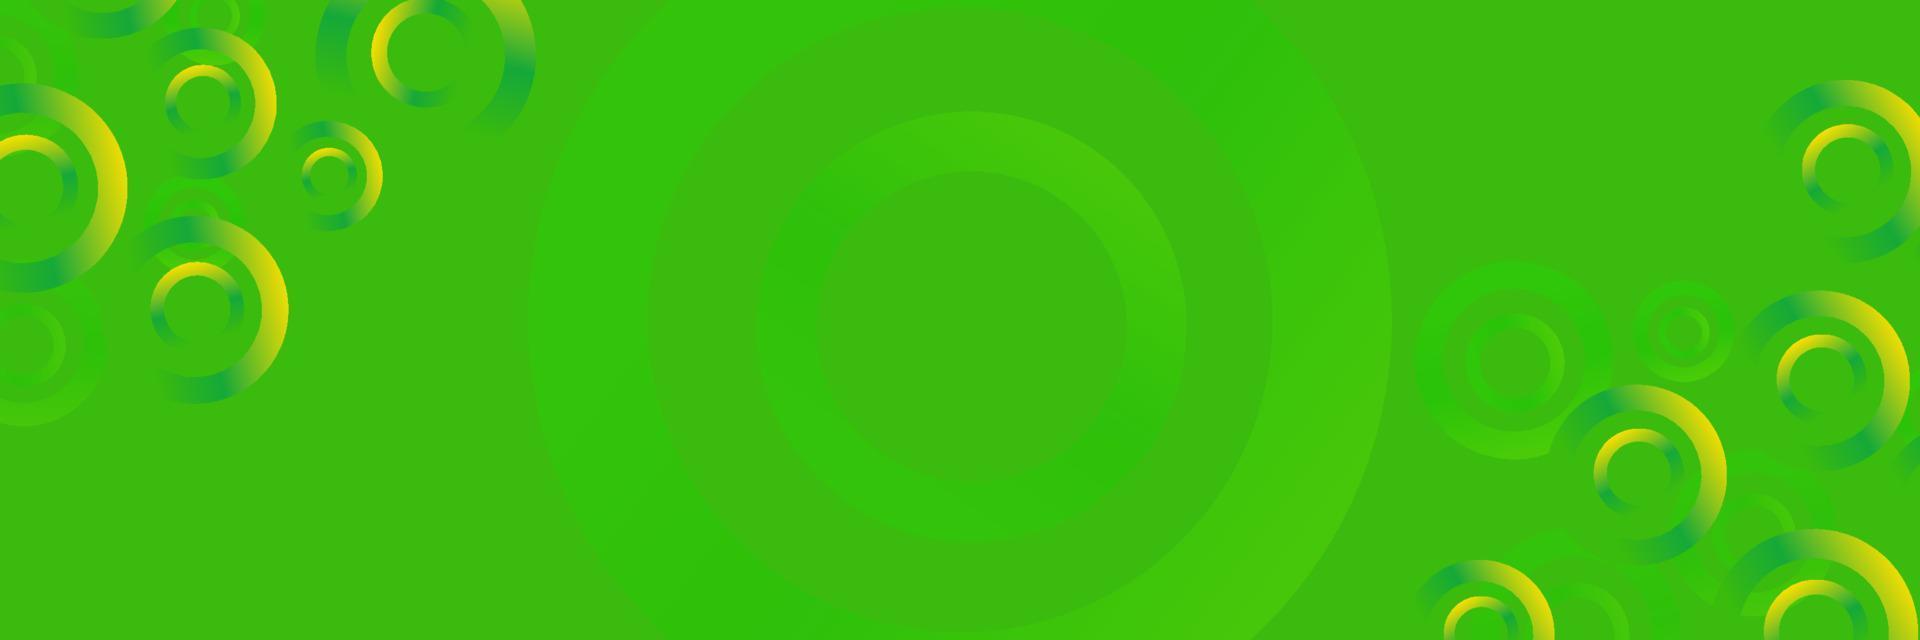 verde astratto sfondo con cerchi dinamico. modello per striscione, sito web vettore